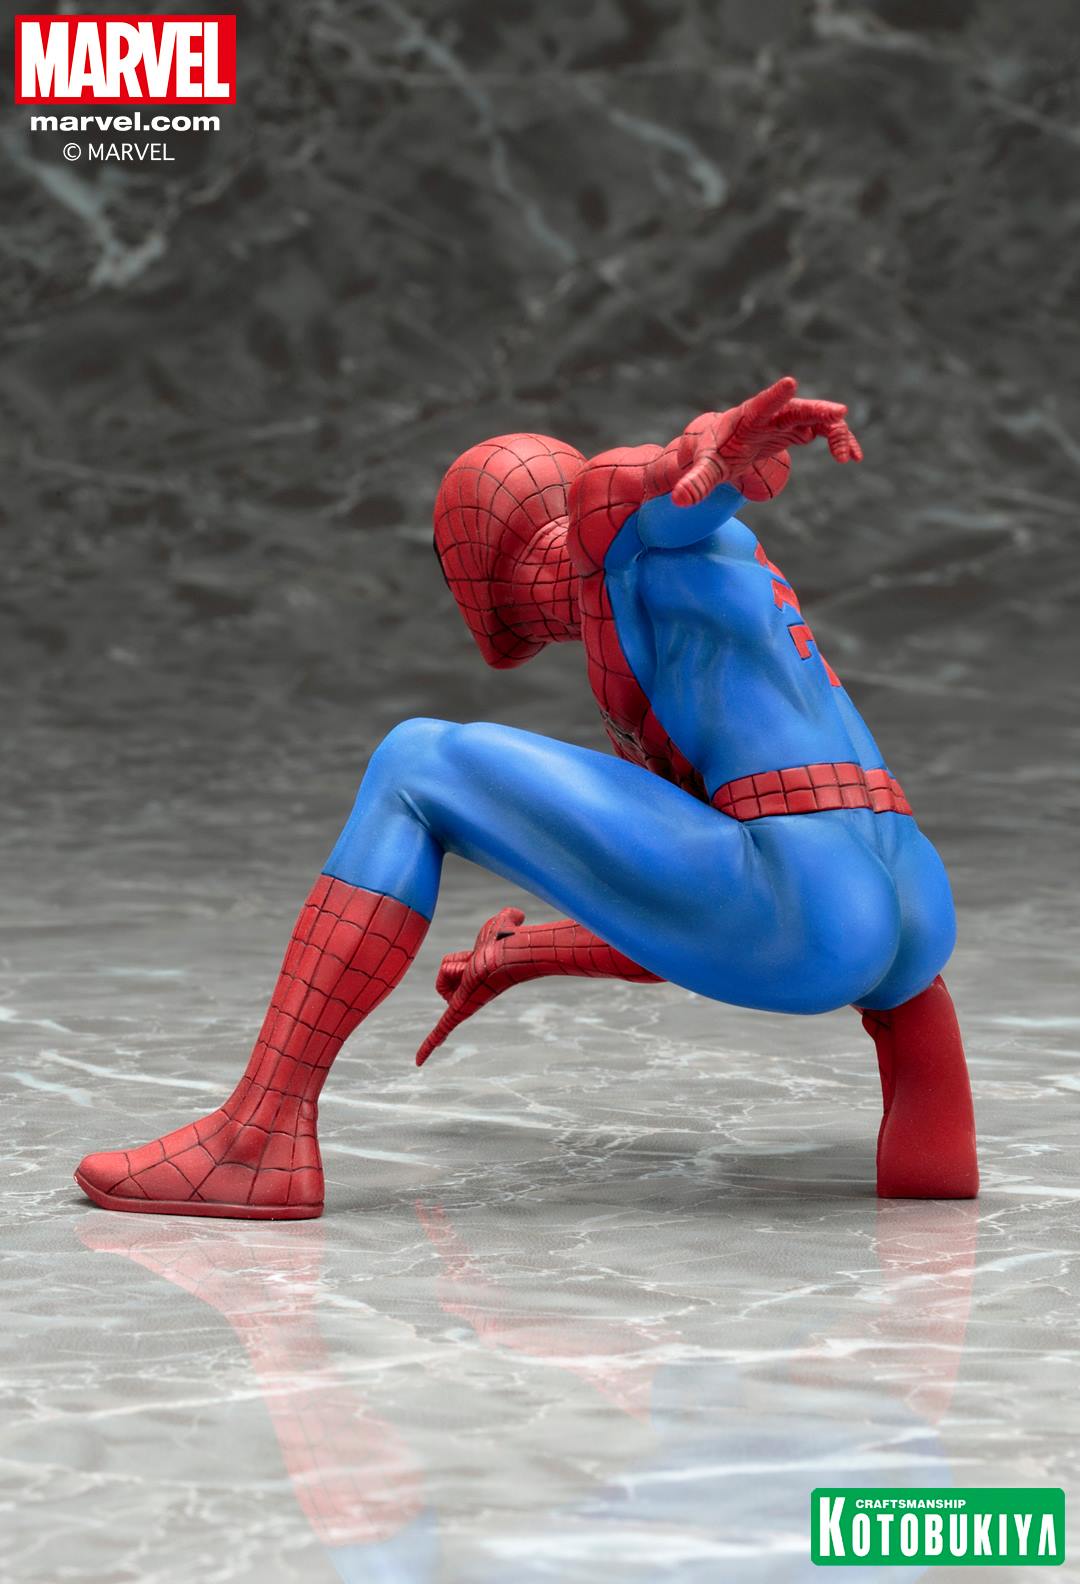 Kotobukiya Marvel Now ARTFX+ Amazing Spider-Man Statue